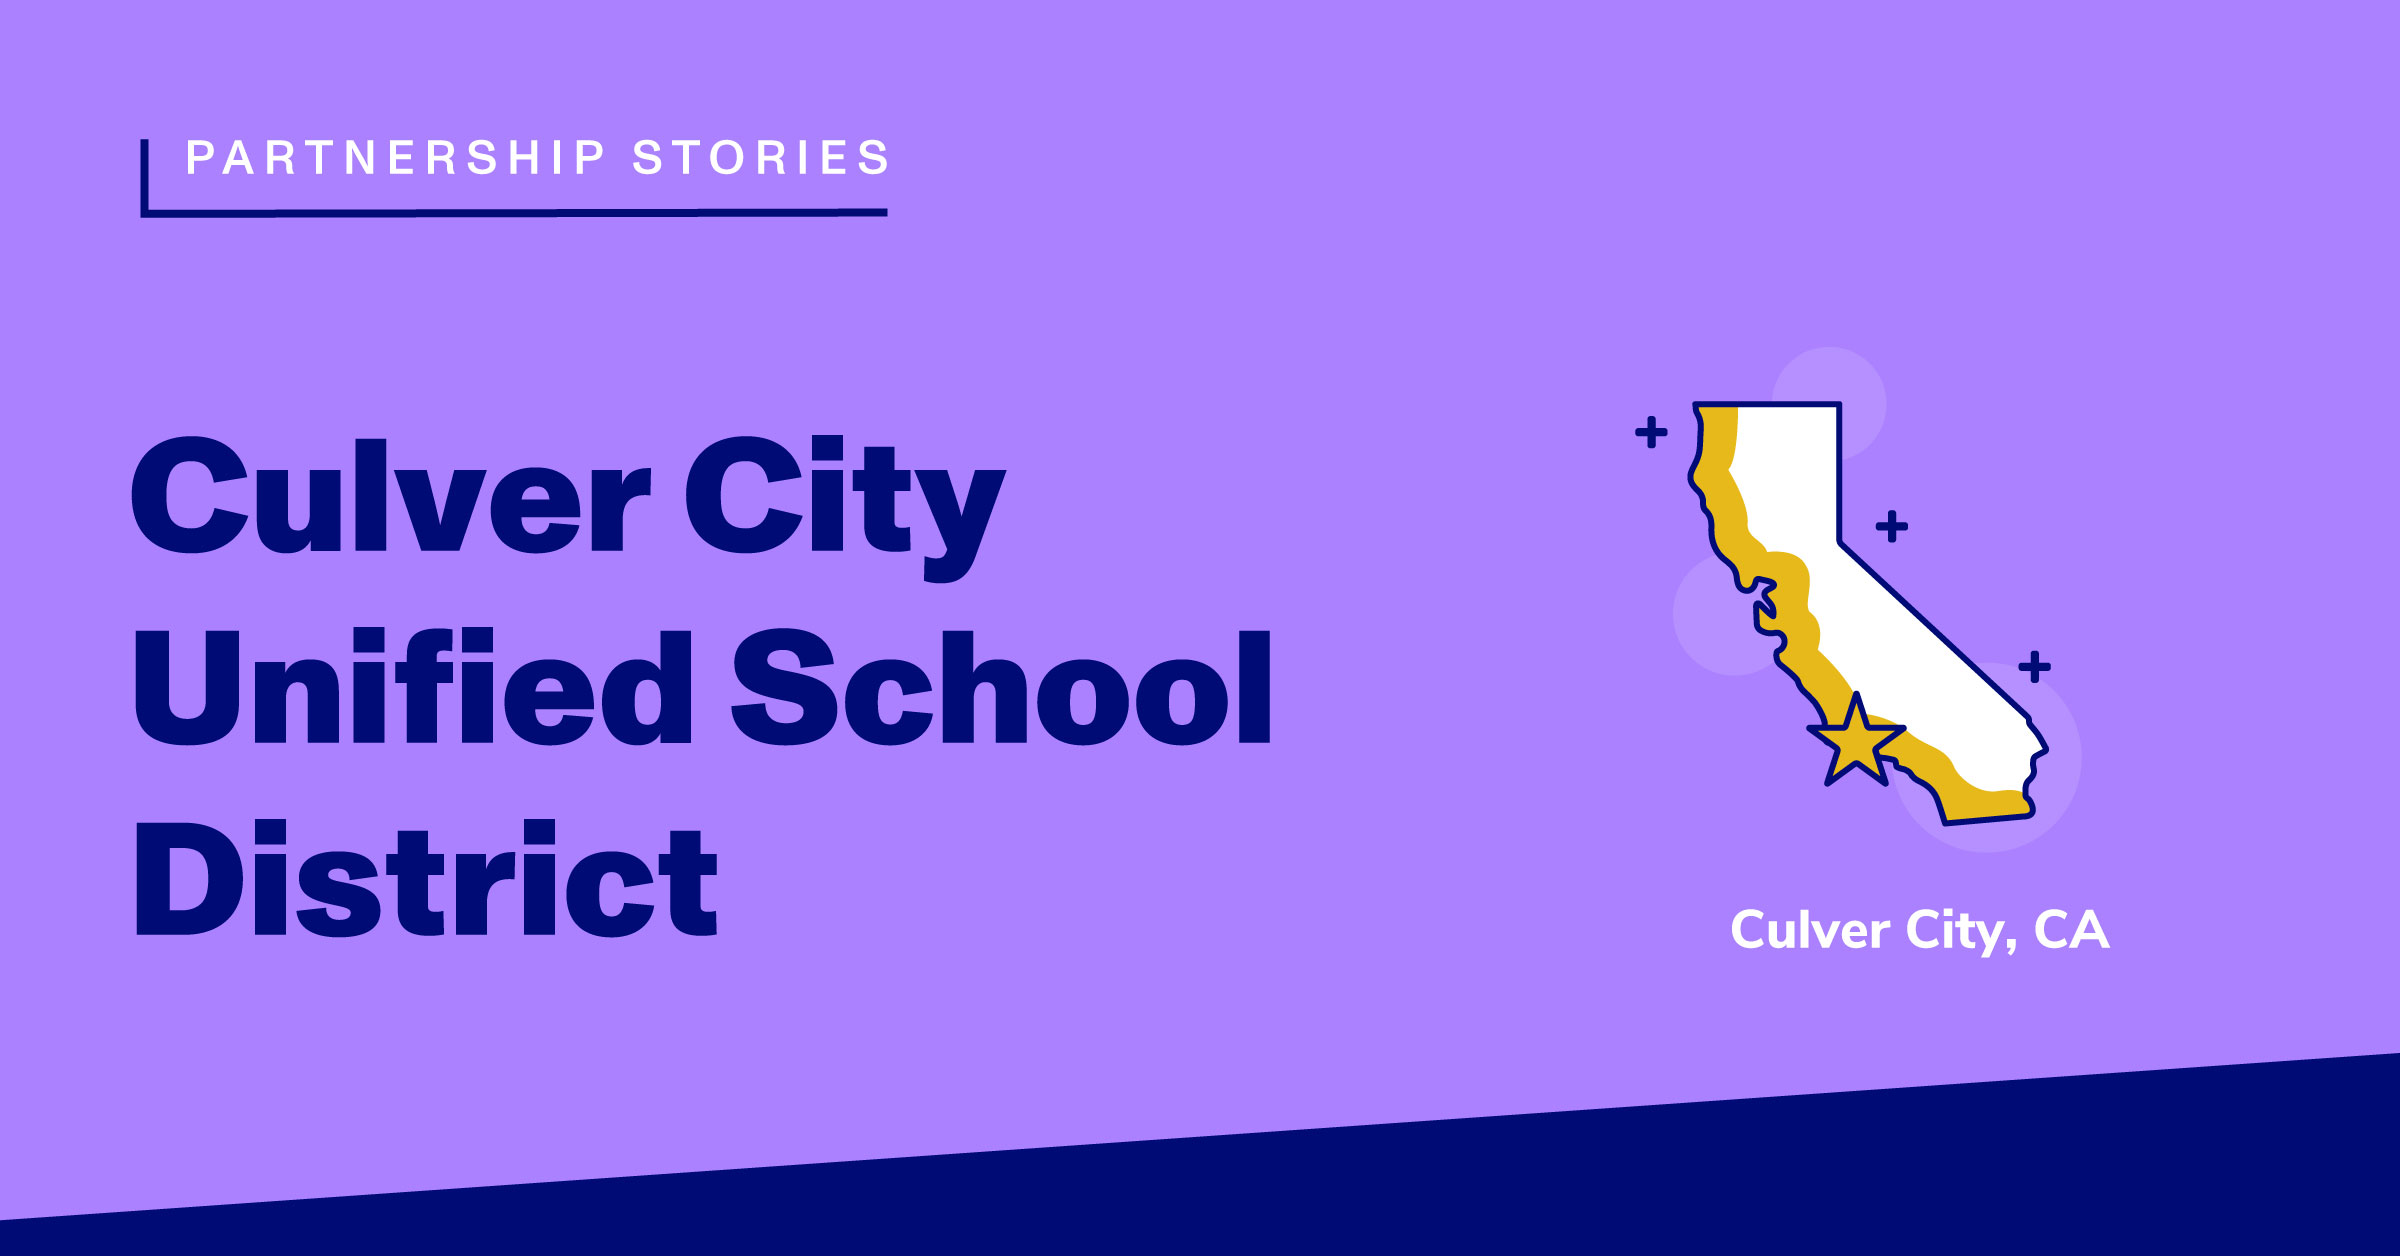 Culver City Unified School District: Culver City, California